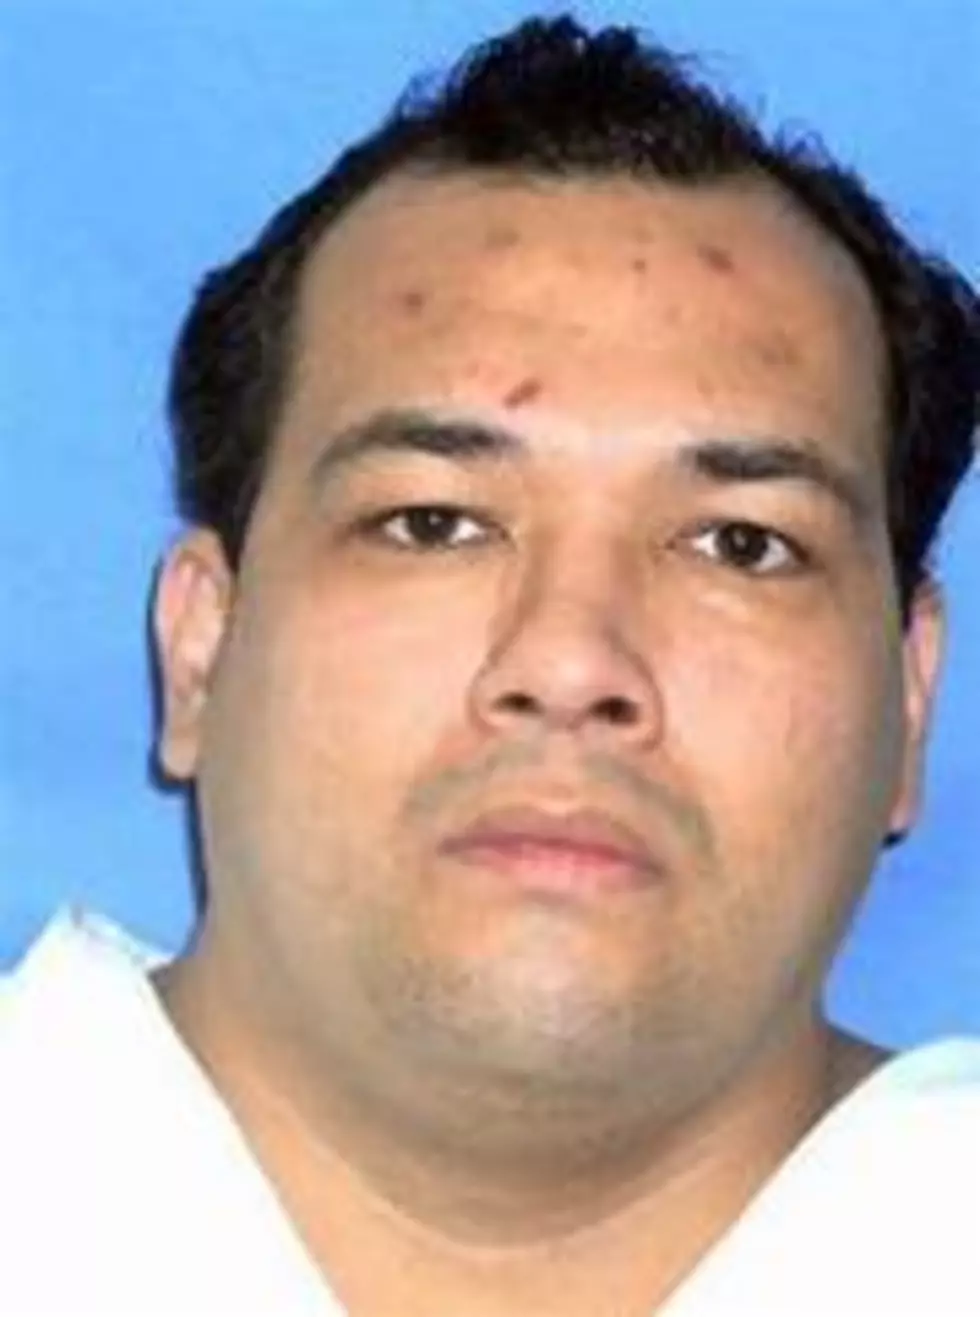 Texas Murderer-Rapist Executed